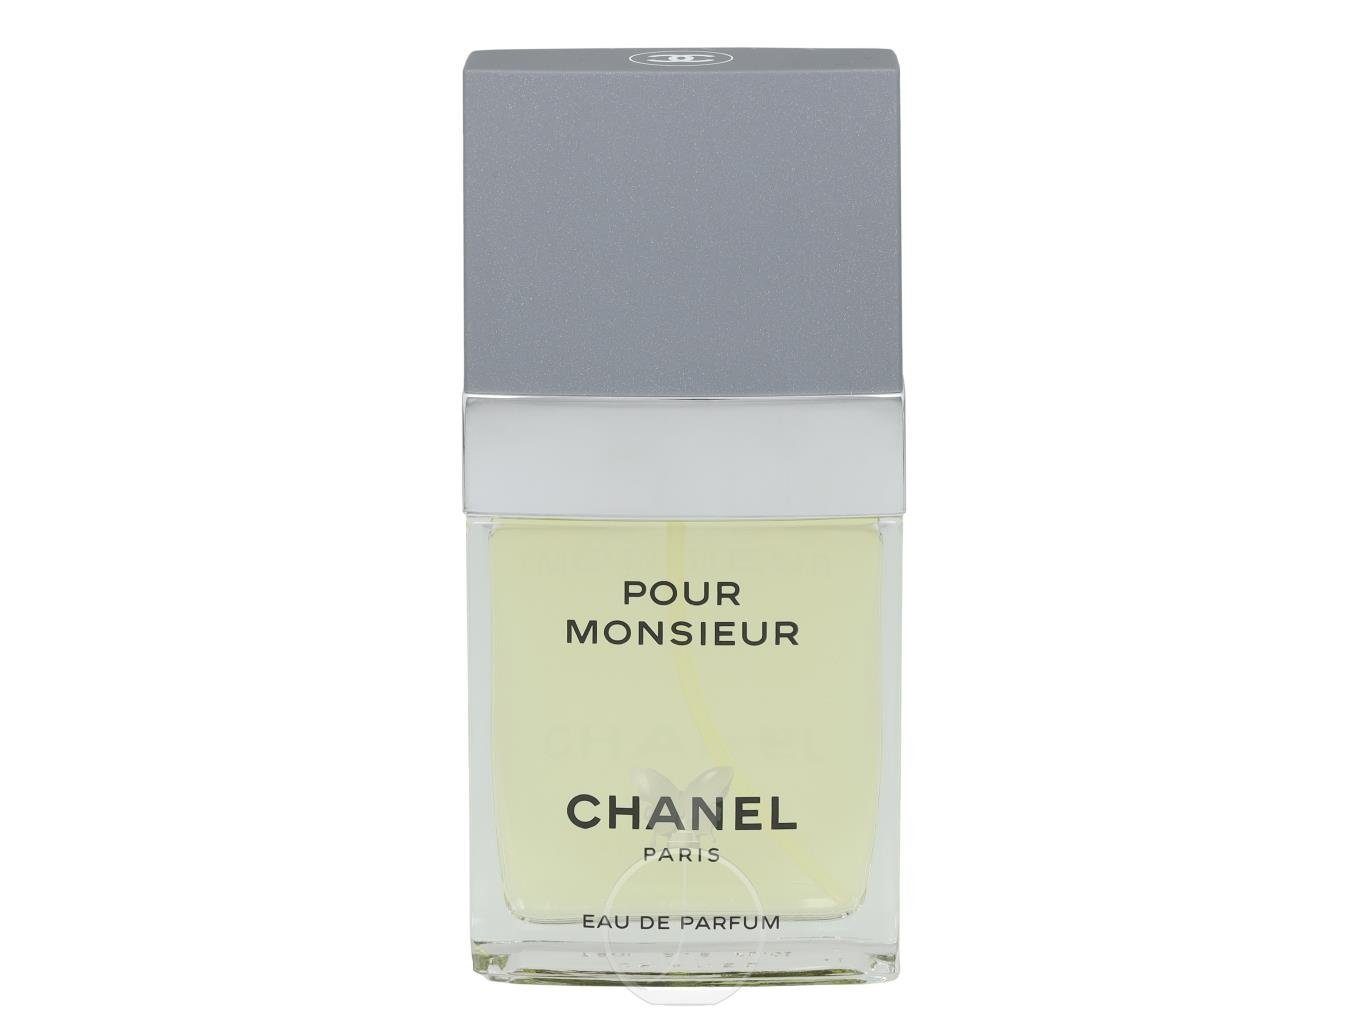 CHANEL Eau de Parfum Chanel Pour Monsieur Eau de Parfum 75 ml | Eau de Parfum